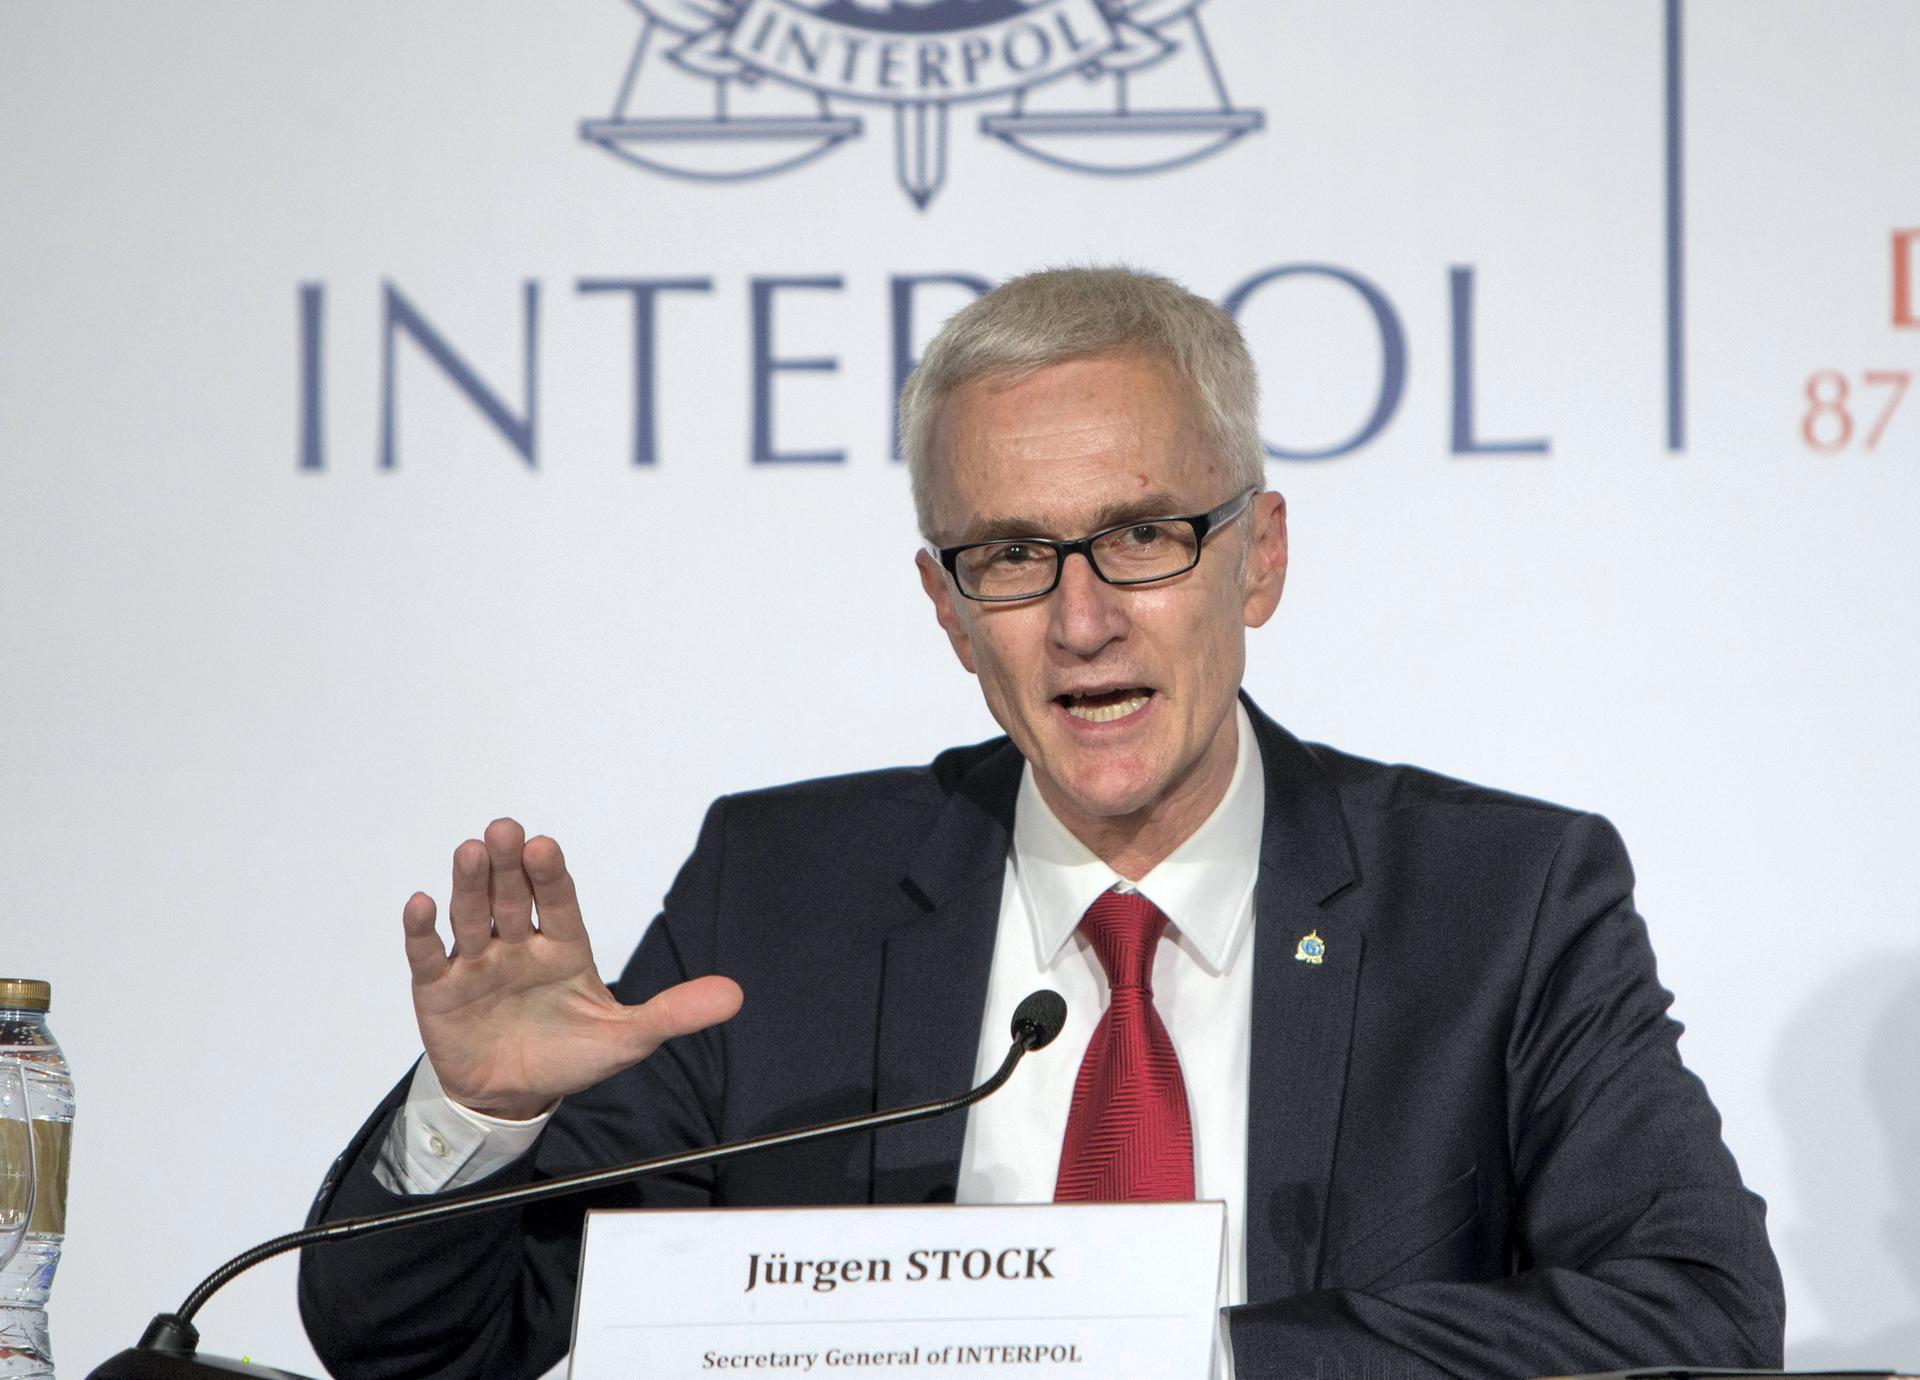 Jurgen Stock, tổng thư ký Tổ chức Cảnh sát Hình sự Quốc tế Interpol cho biết, ông lo ngại vũ khí mạng do các nhà nước phát triển sẽ xuất hiện trên darknet. Ảnh: @AFP.